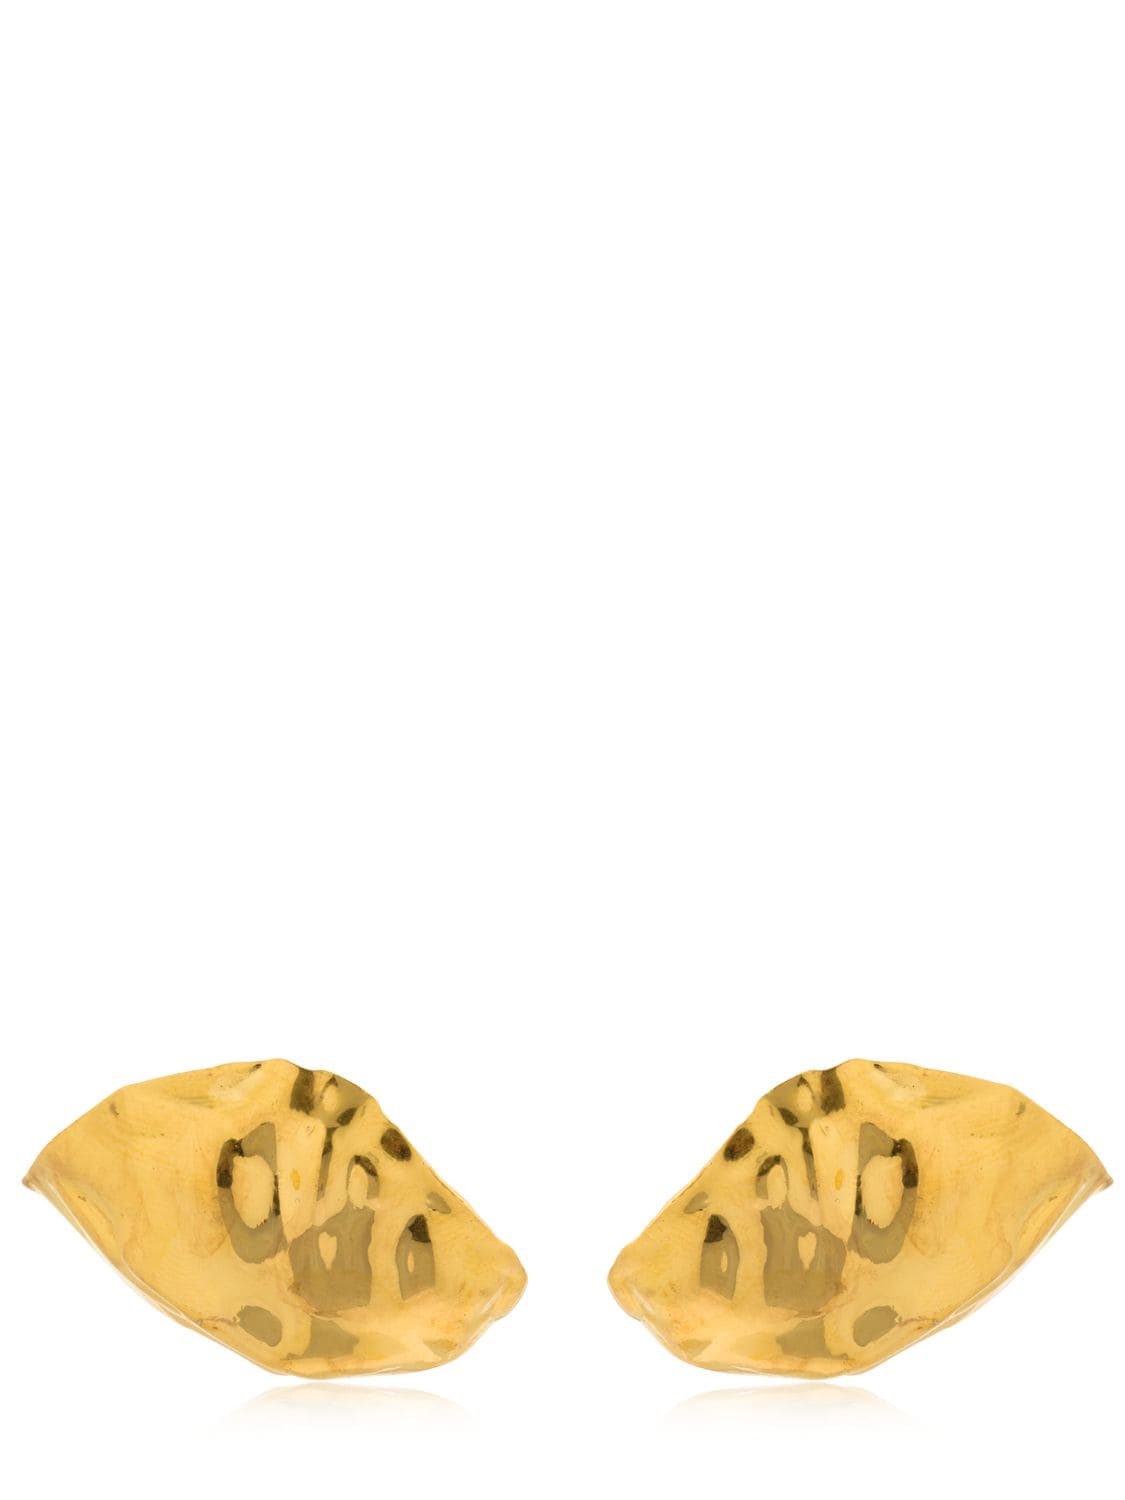 Misho Ear Caps Earrings In Gold